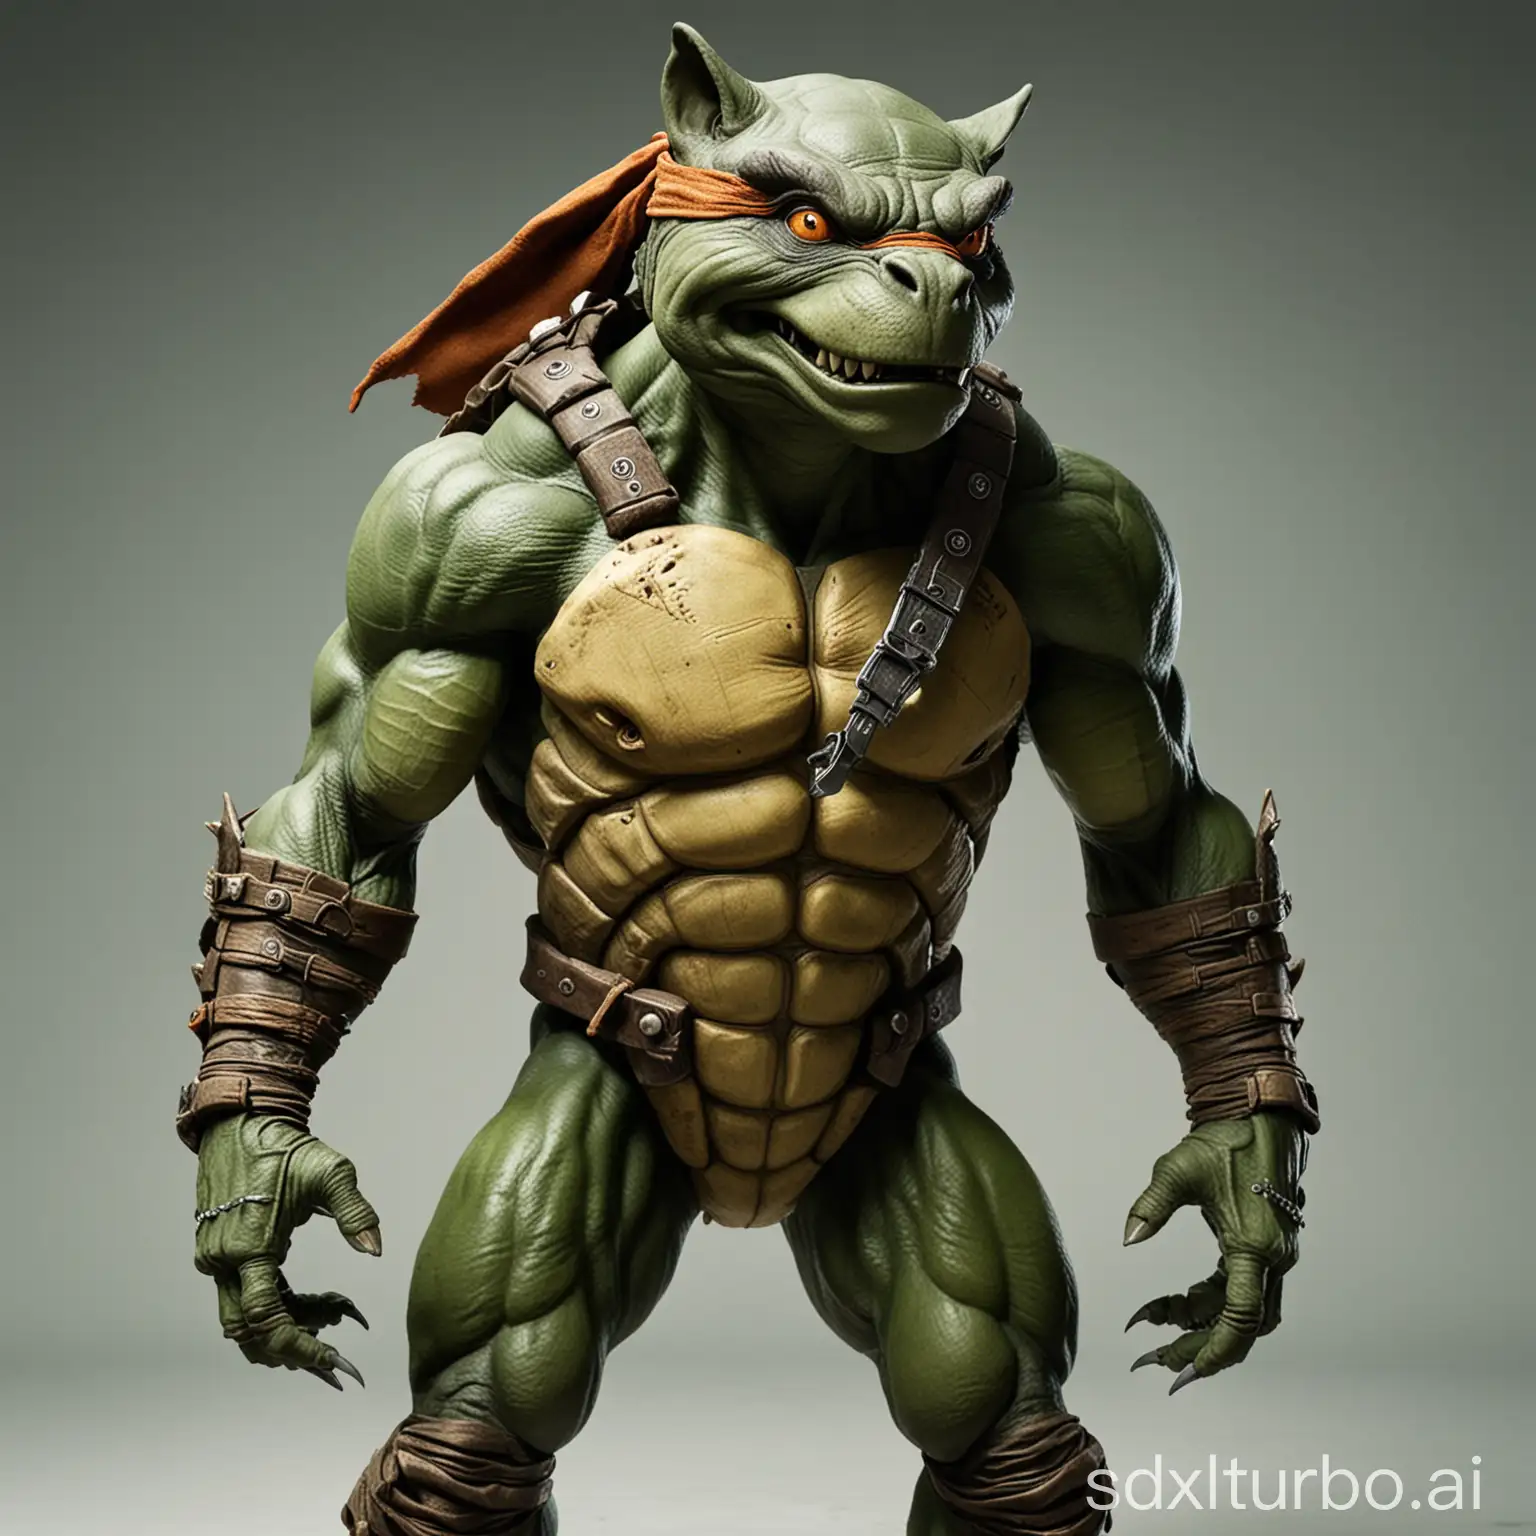 Hybrid-WolfHeaded-Humanoid-with-Turtle-Body-Teenage-Mutant-Ninja-Turtles-Inspired-Art